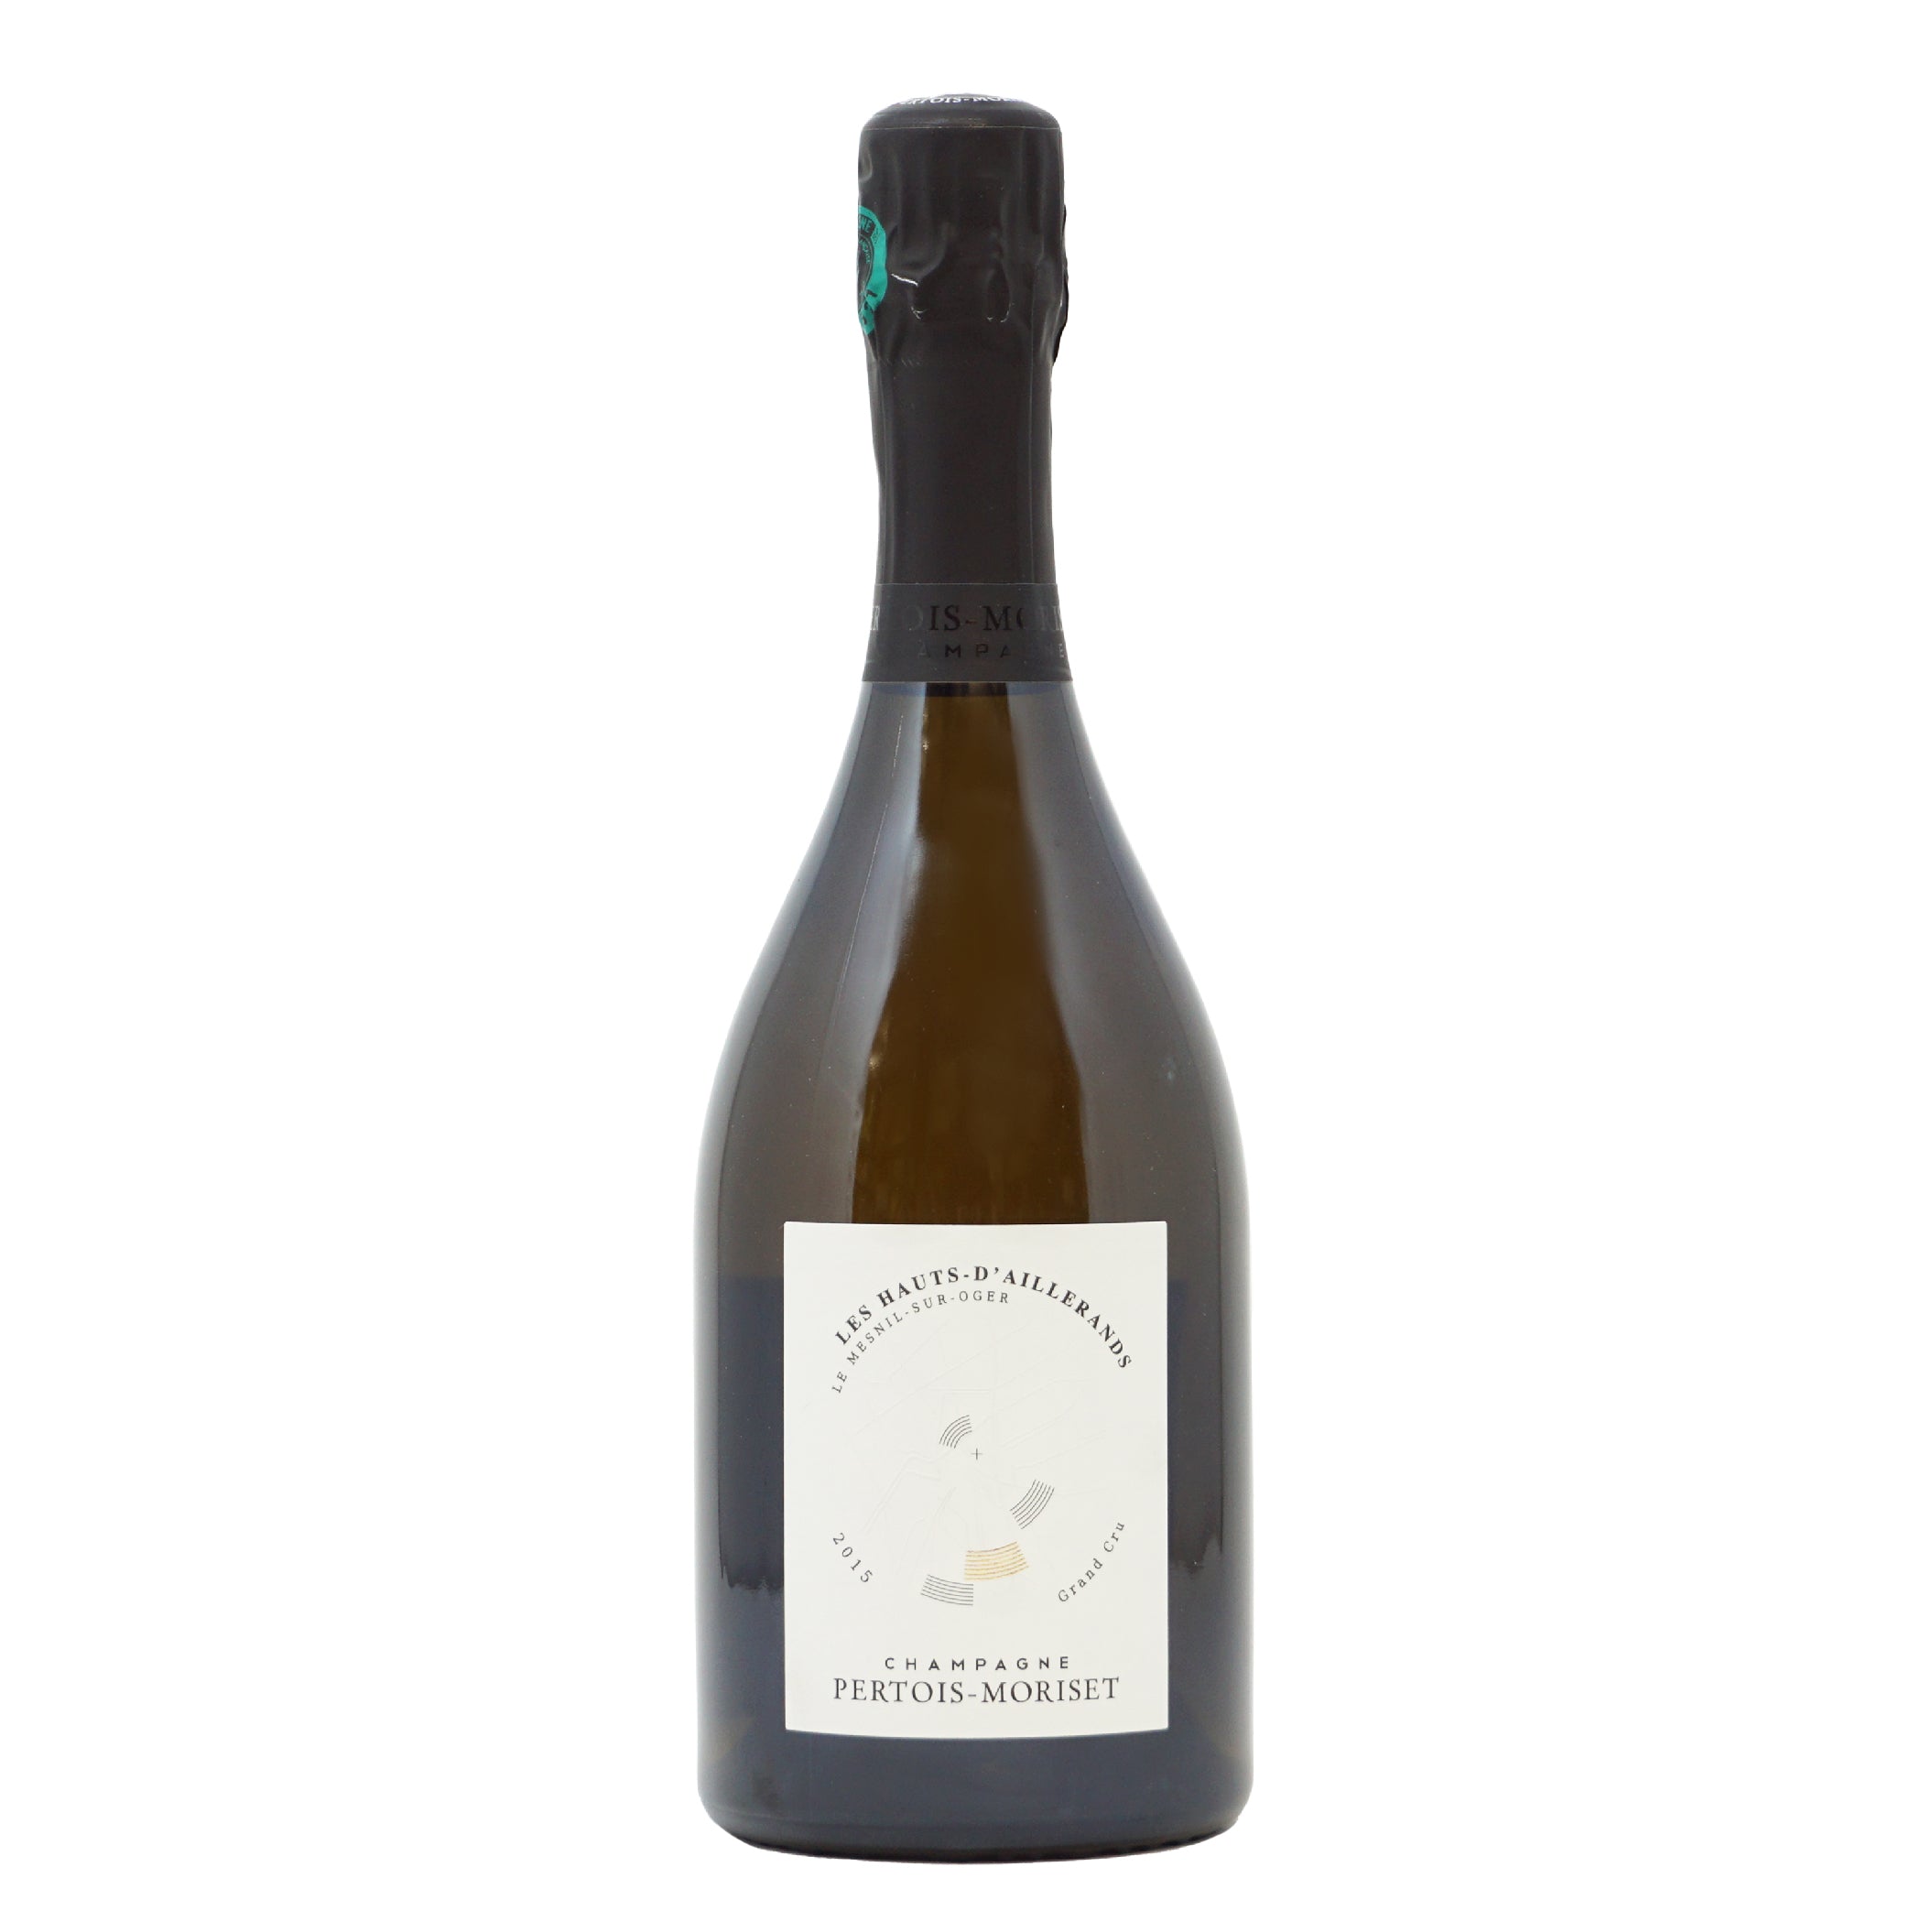 Champagne Les Hauts-D'Aillerands 2015 Pertois-Moriset lt.0,750